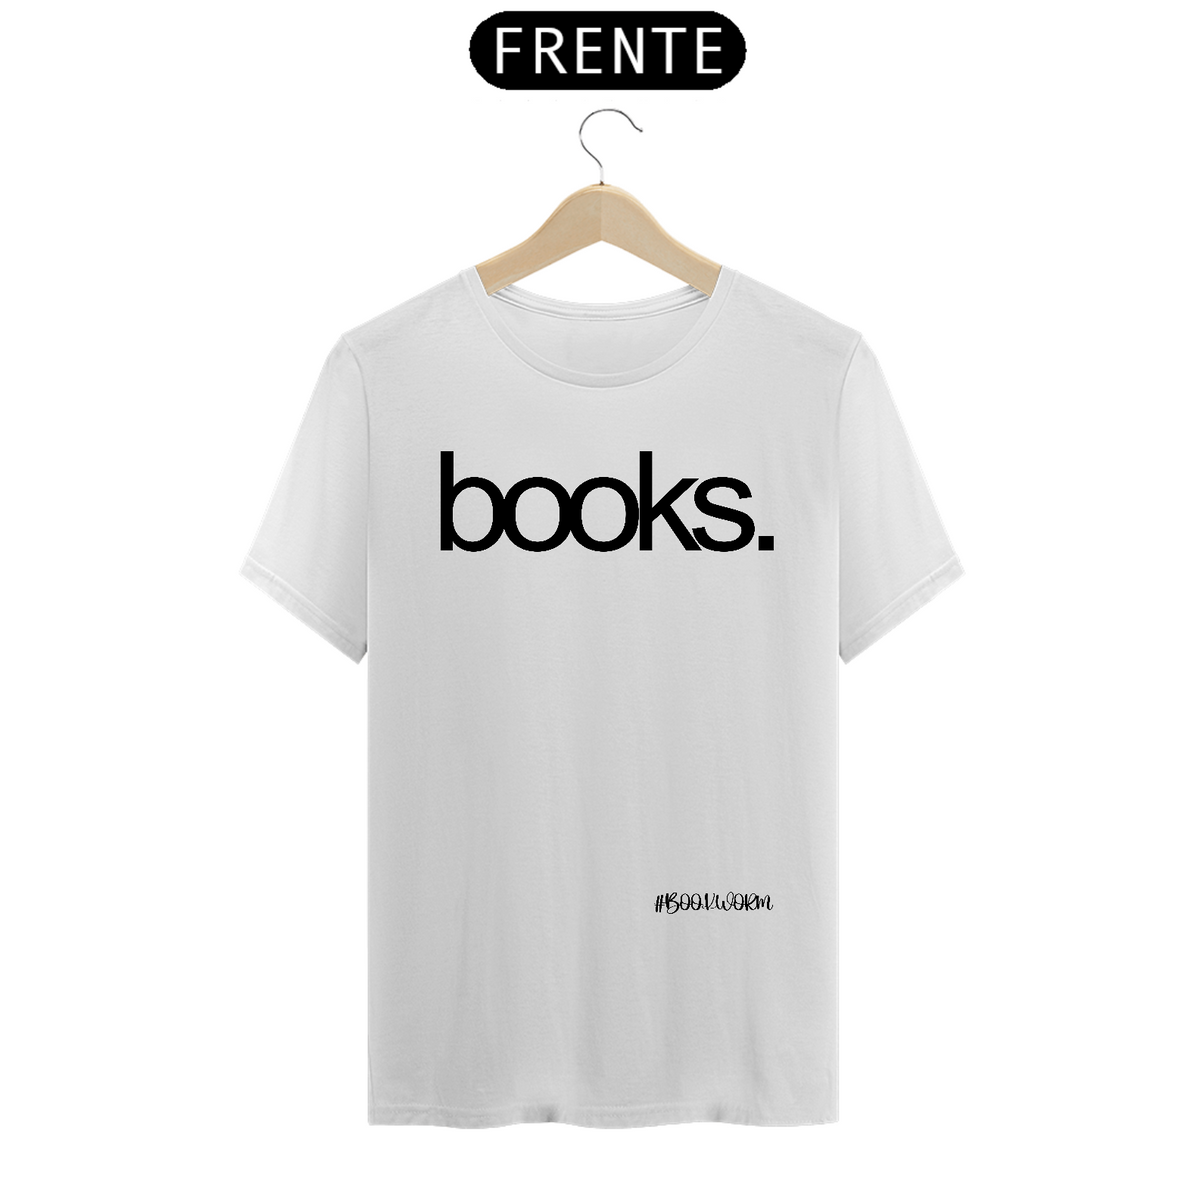 Nome do produto: Camiseta Books.